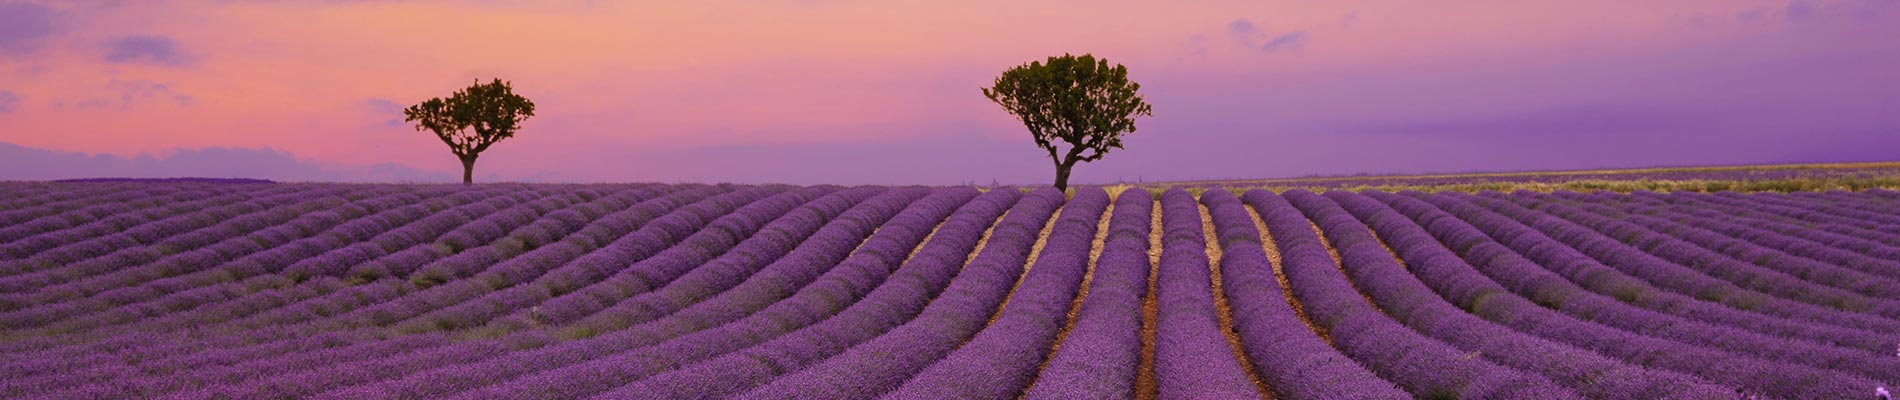 champs de lavande aux couleurs violettes